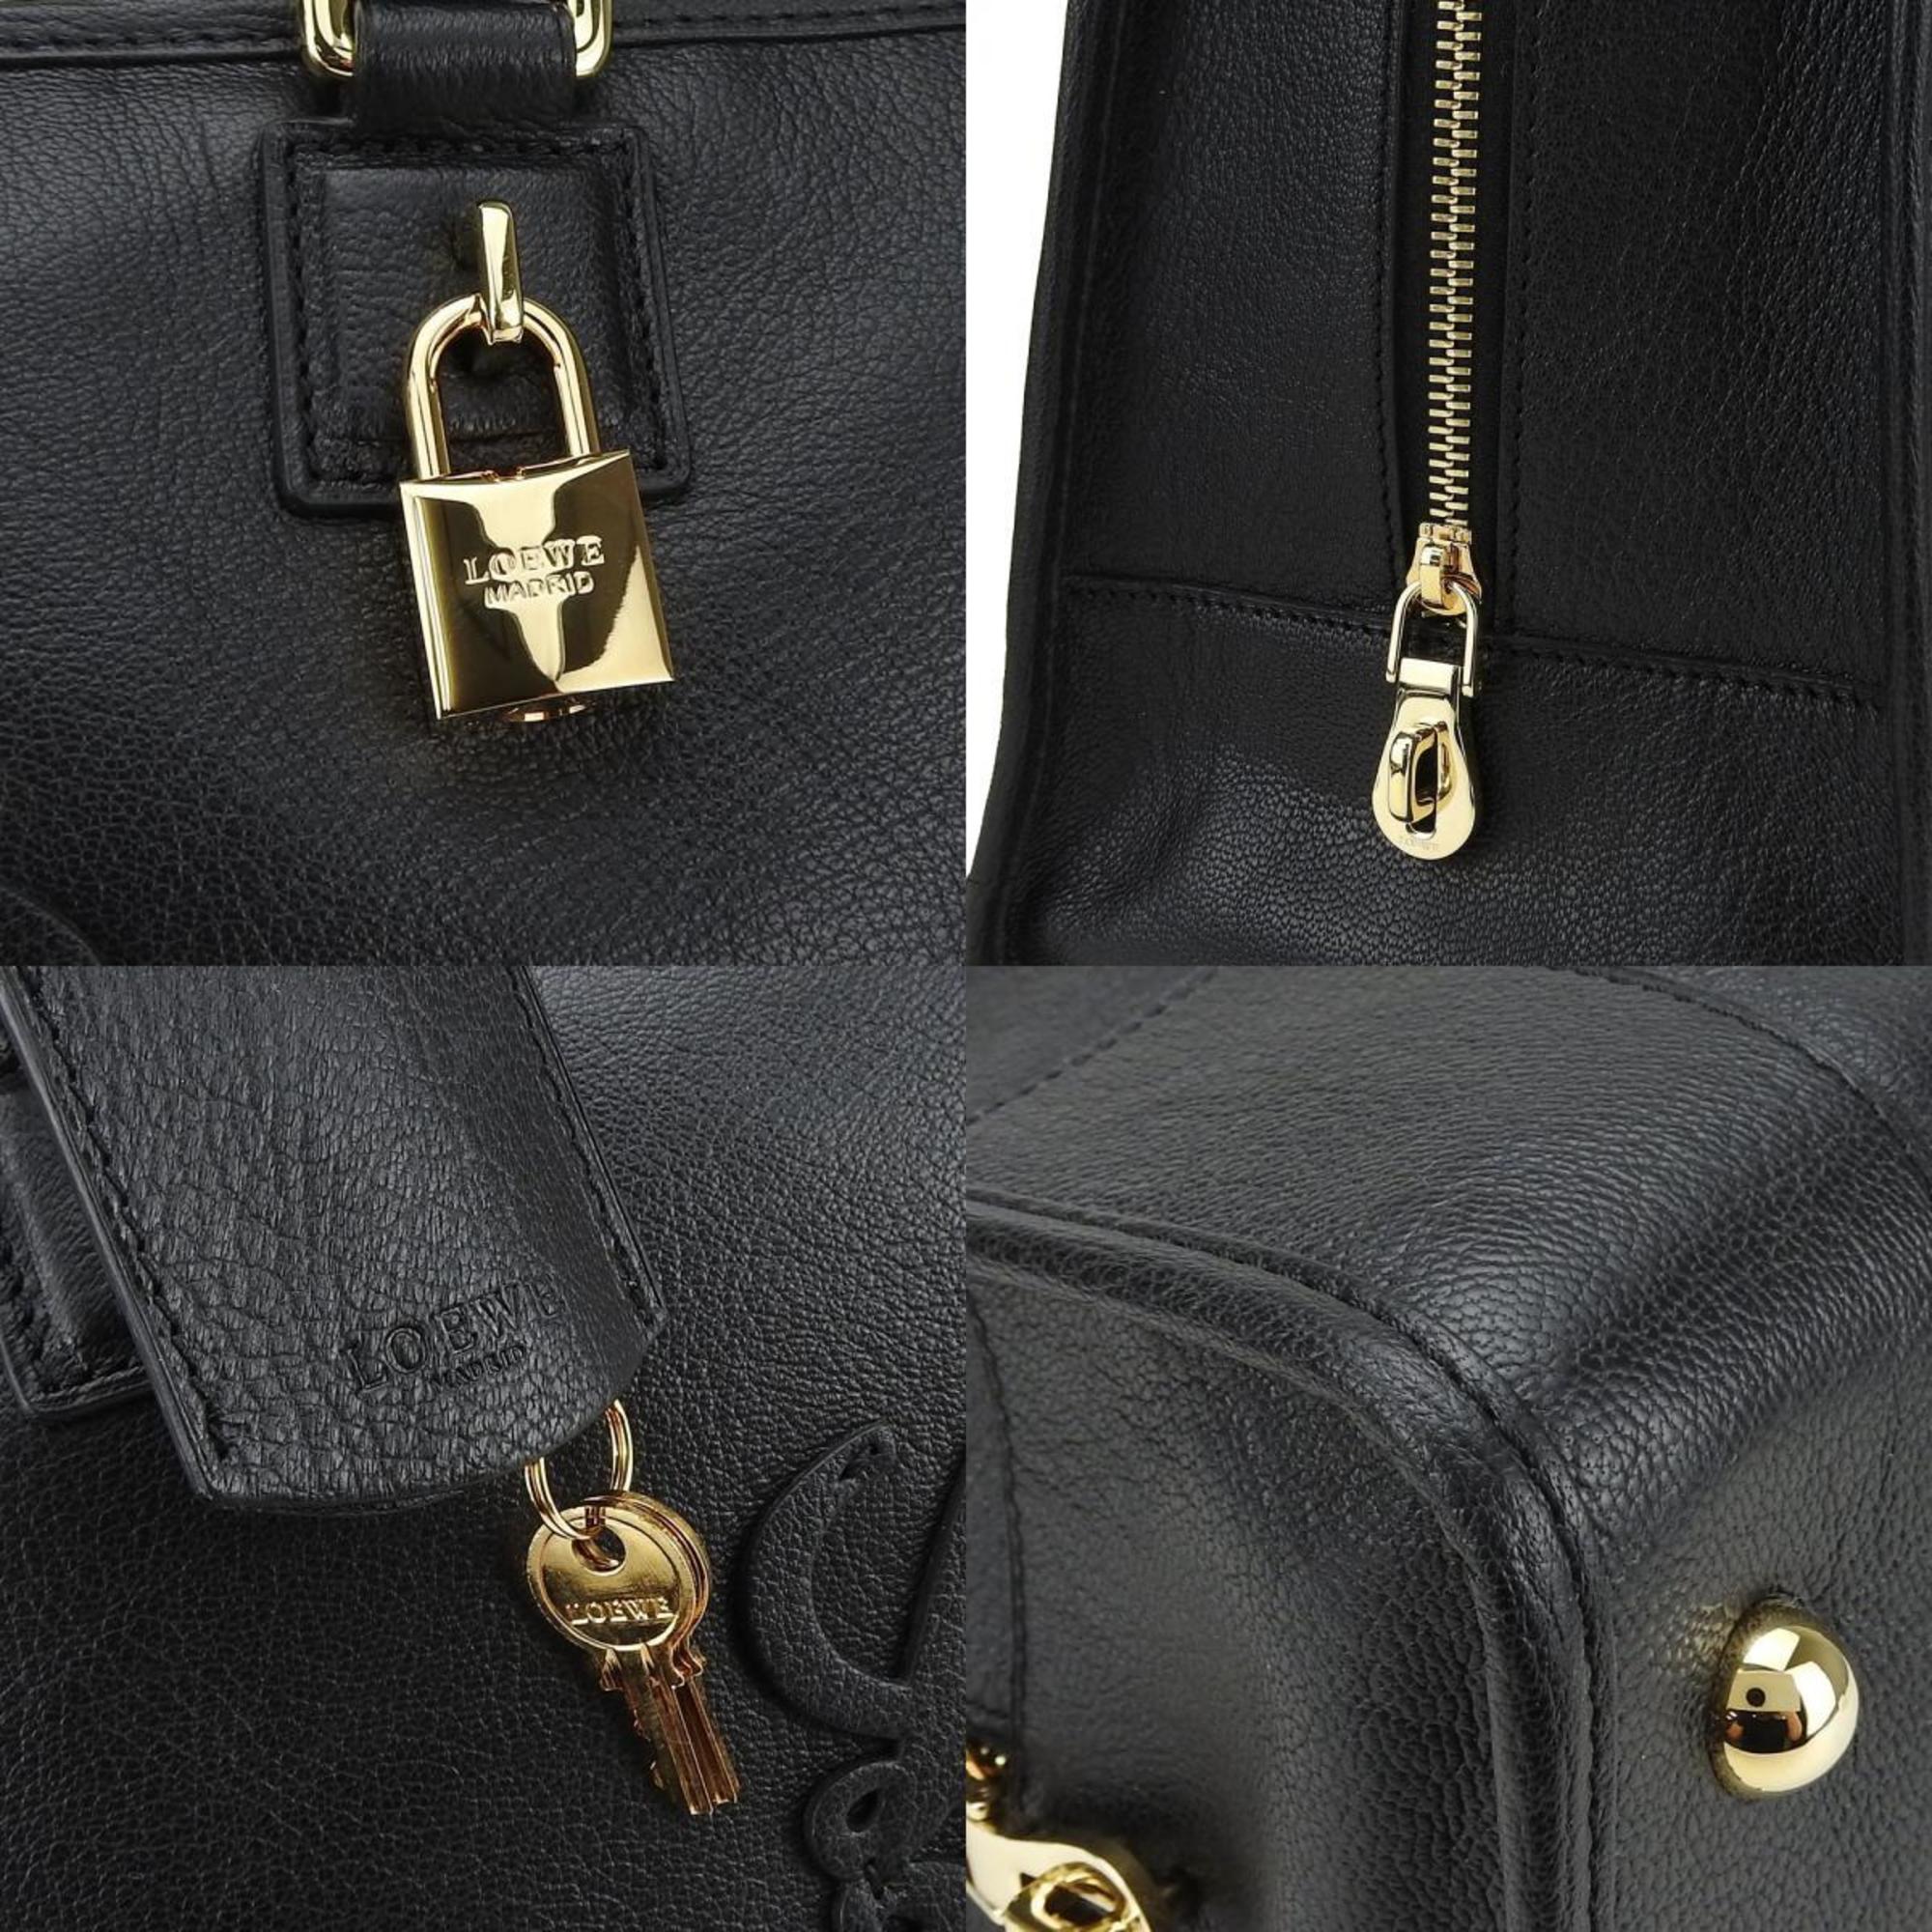 LOEWE Handbag Amazona 36 Anagram Leather Black Women's